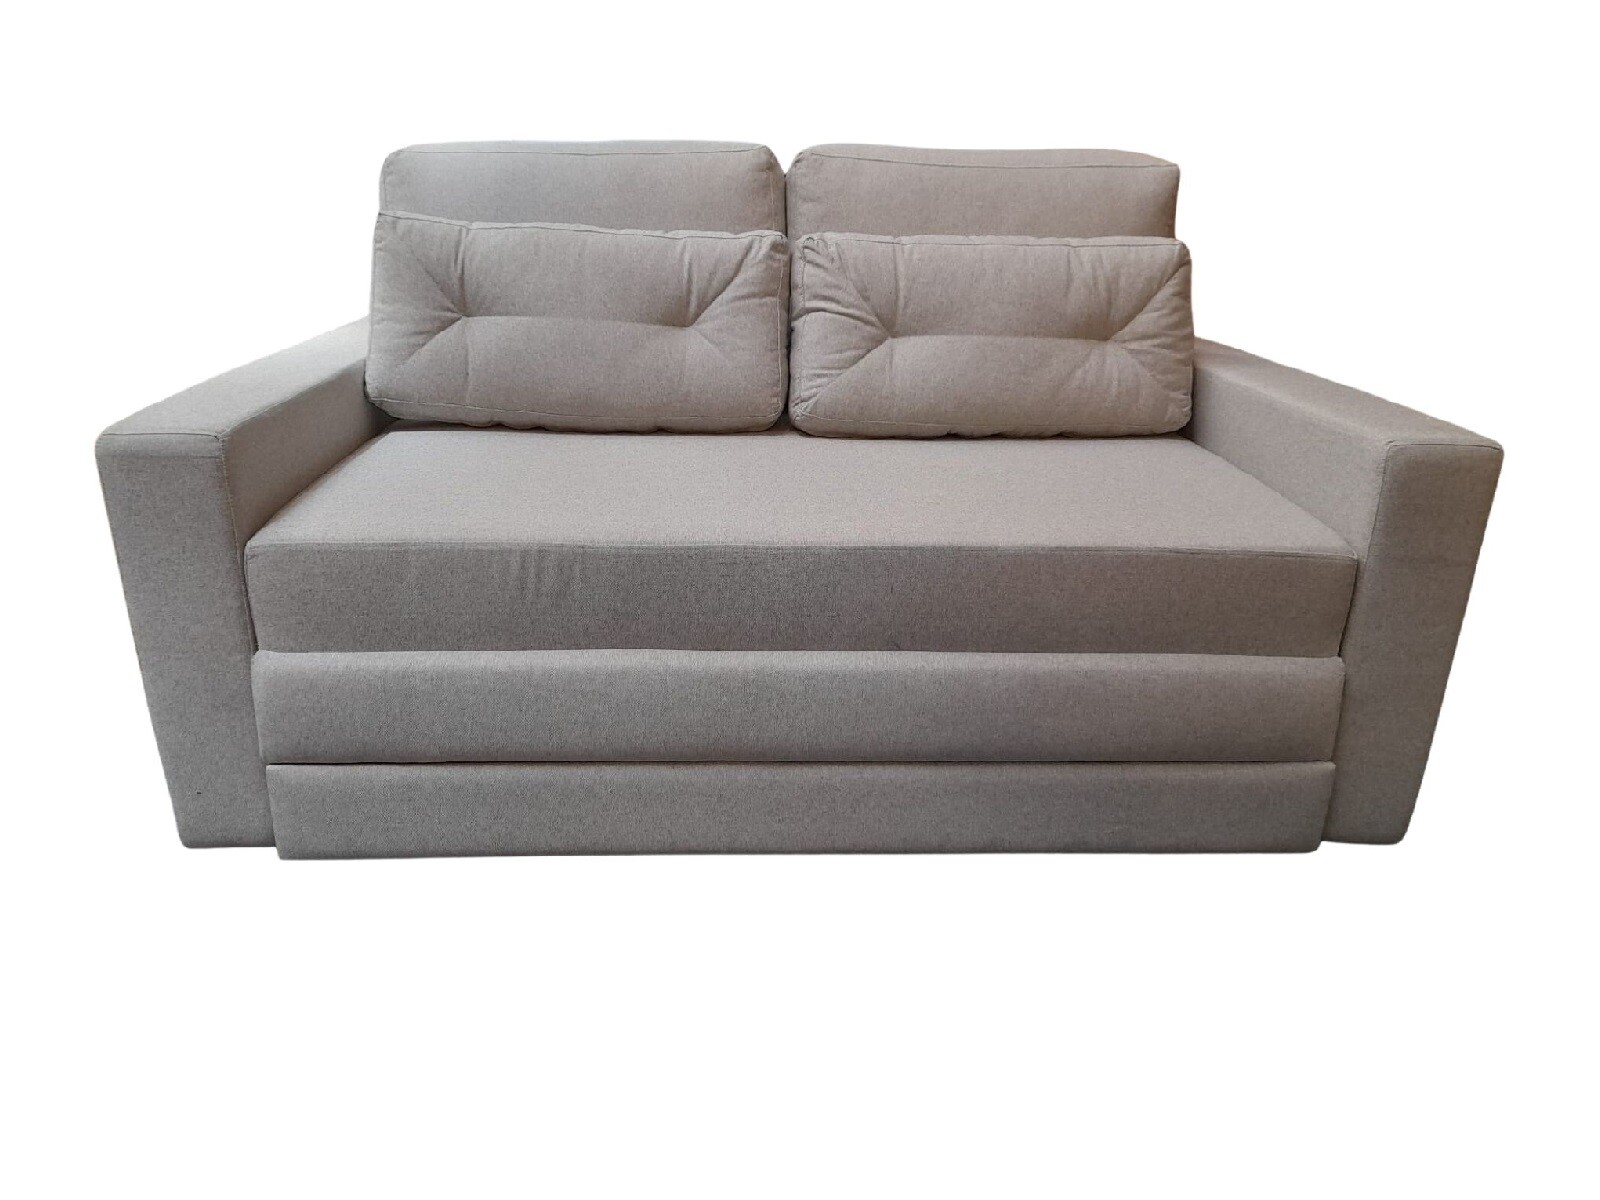 Sofa Cama E515 